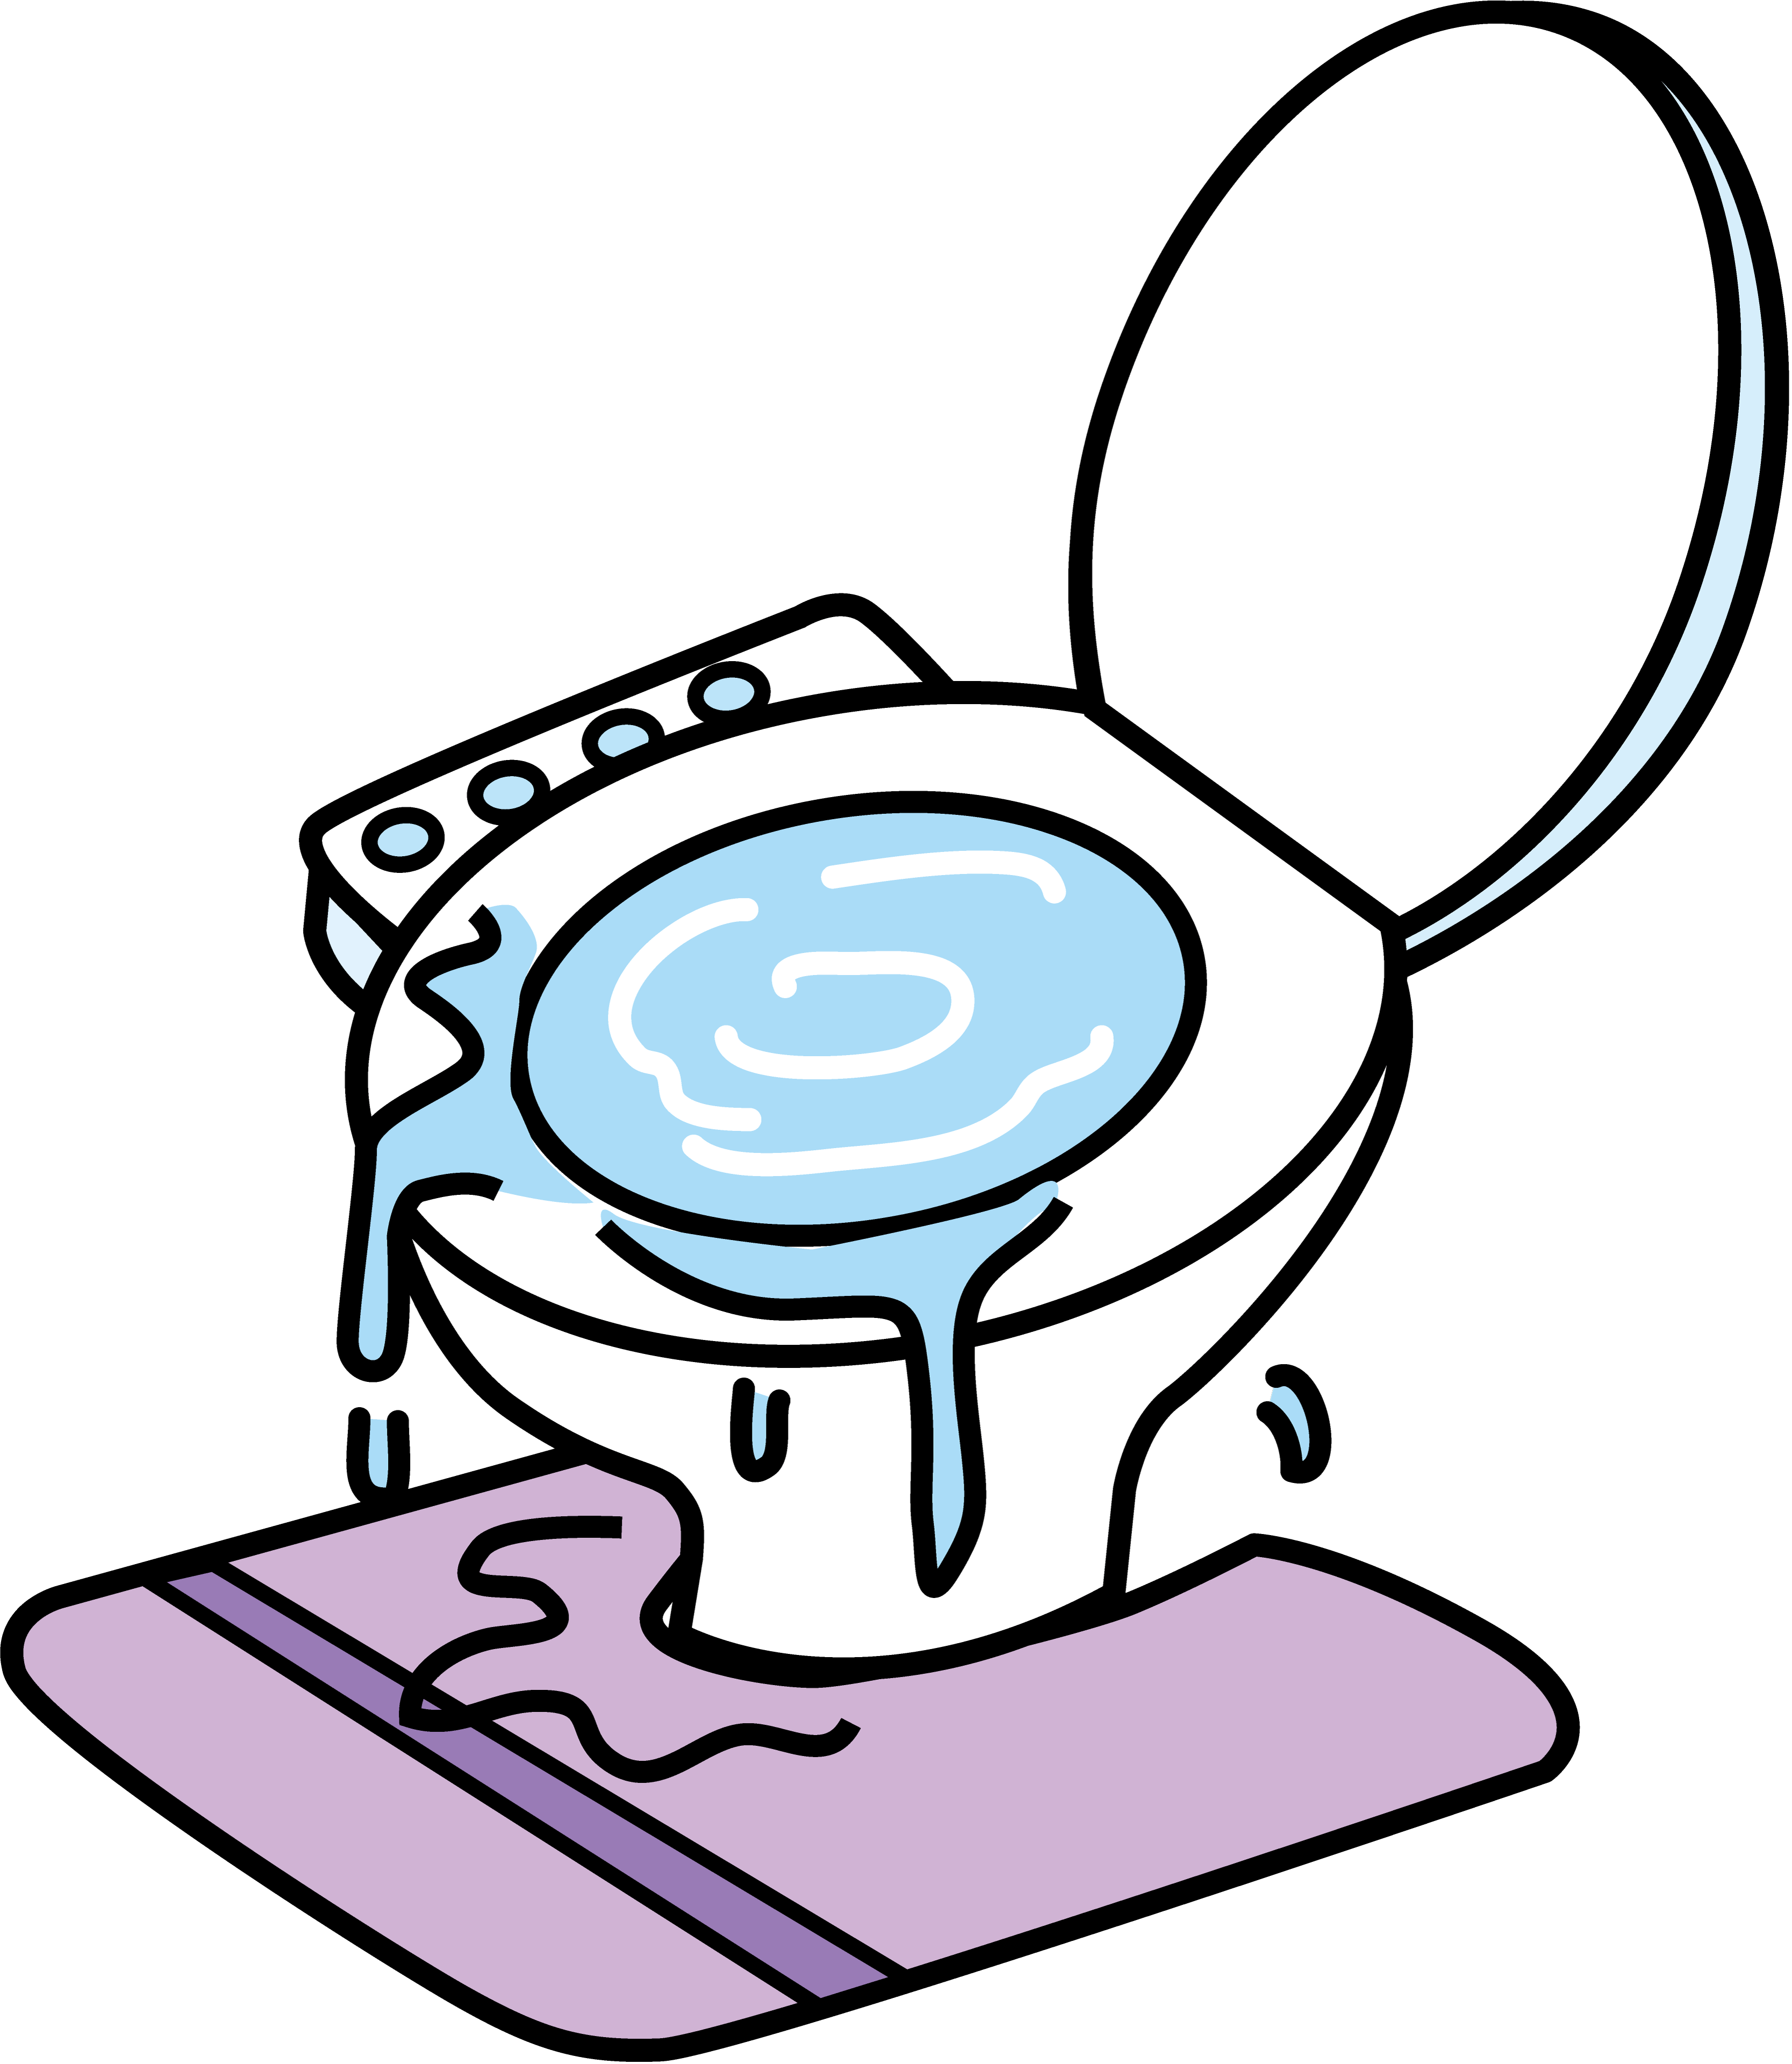 女性必見 実は間違っているトイレの 大と小 の使い方 小 使用で詰まりトラブルの危険性も 九州水道修理サービス お客様のお役立ち情報 北九州 大分の水漏れ修理 水トラブル トイレ修理